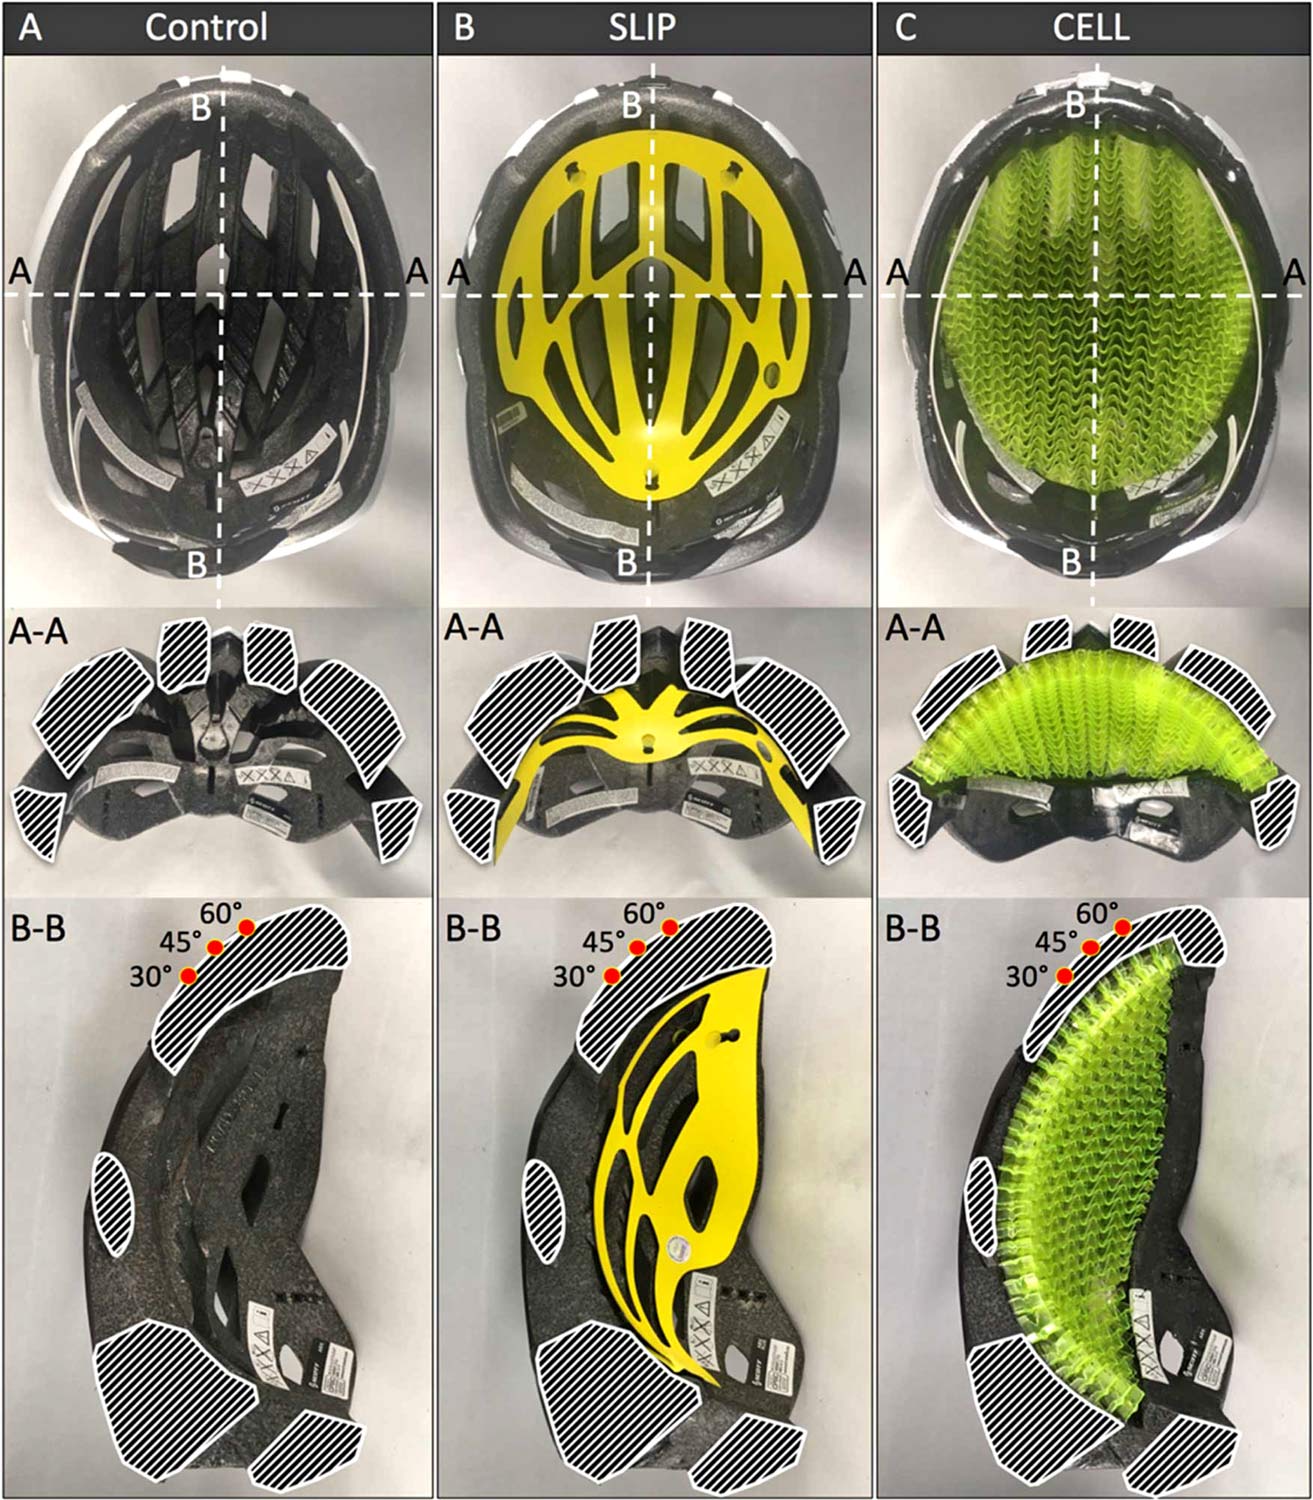 Bontrager WaveCel helmet technology promises safer helmets for cyclists